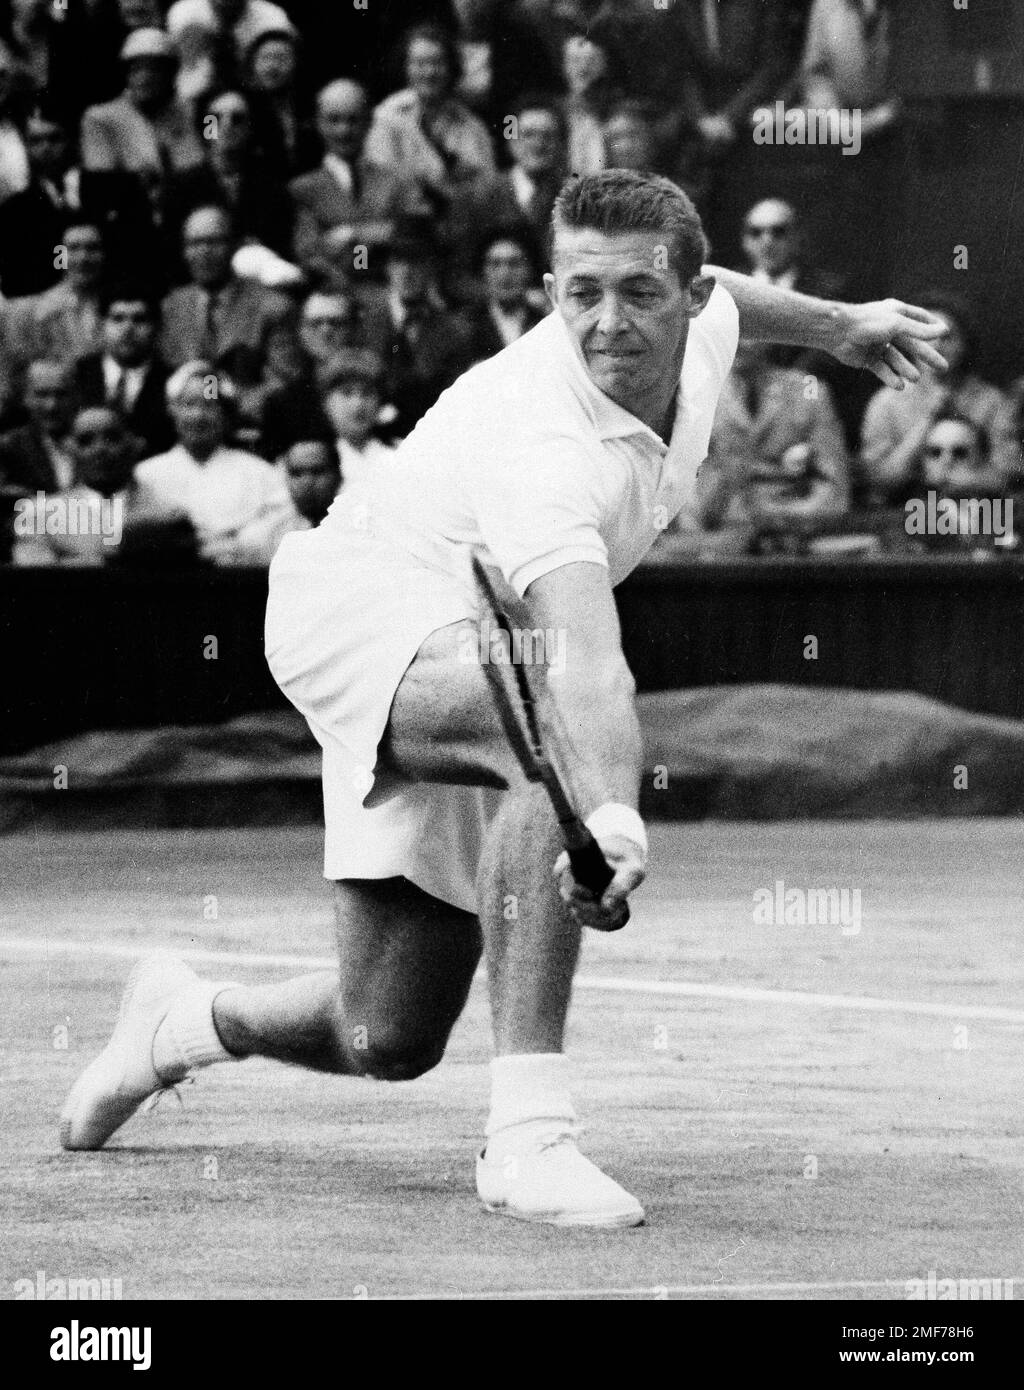 Tennis player Kurt Nielsen at Wimbledon Stock Photo - Alamy